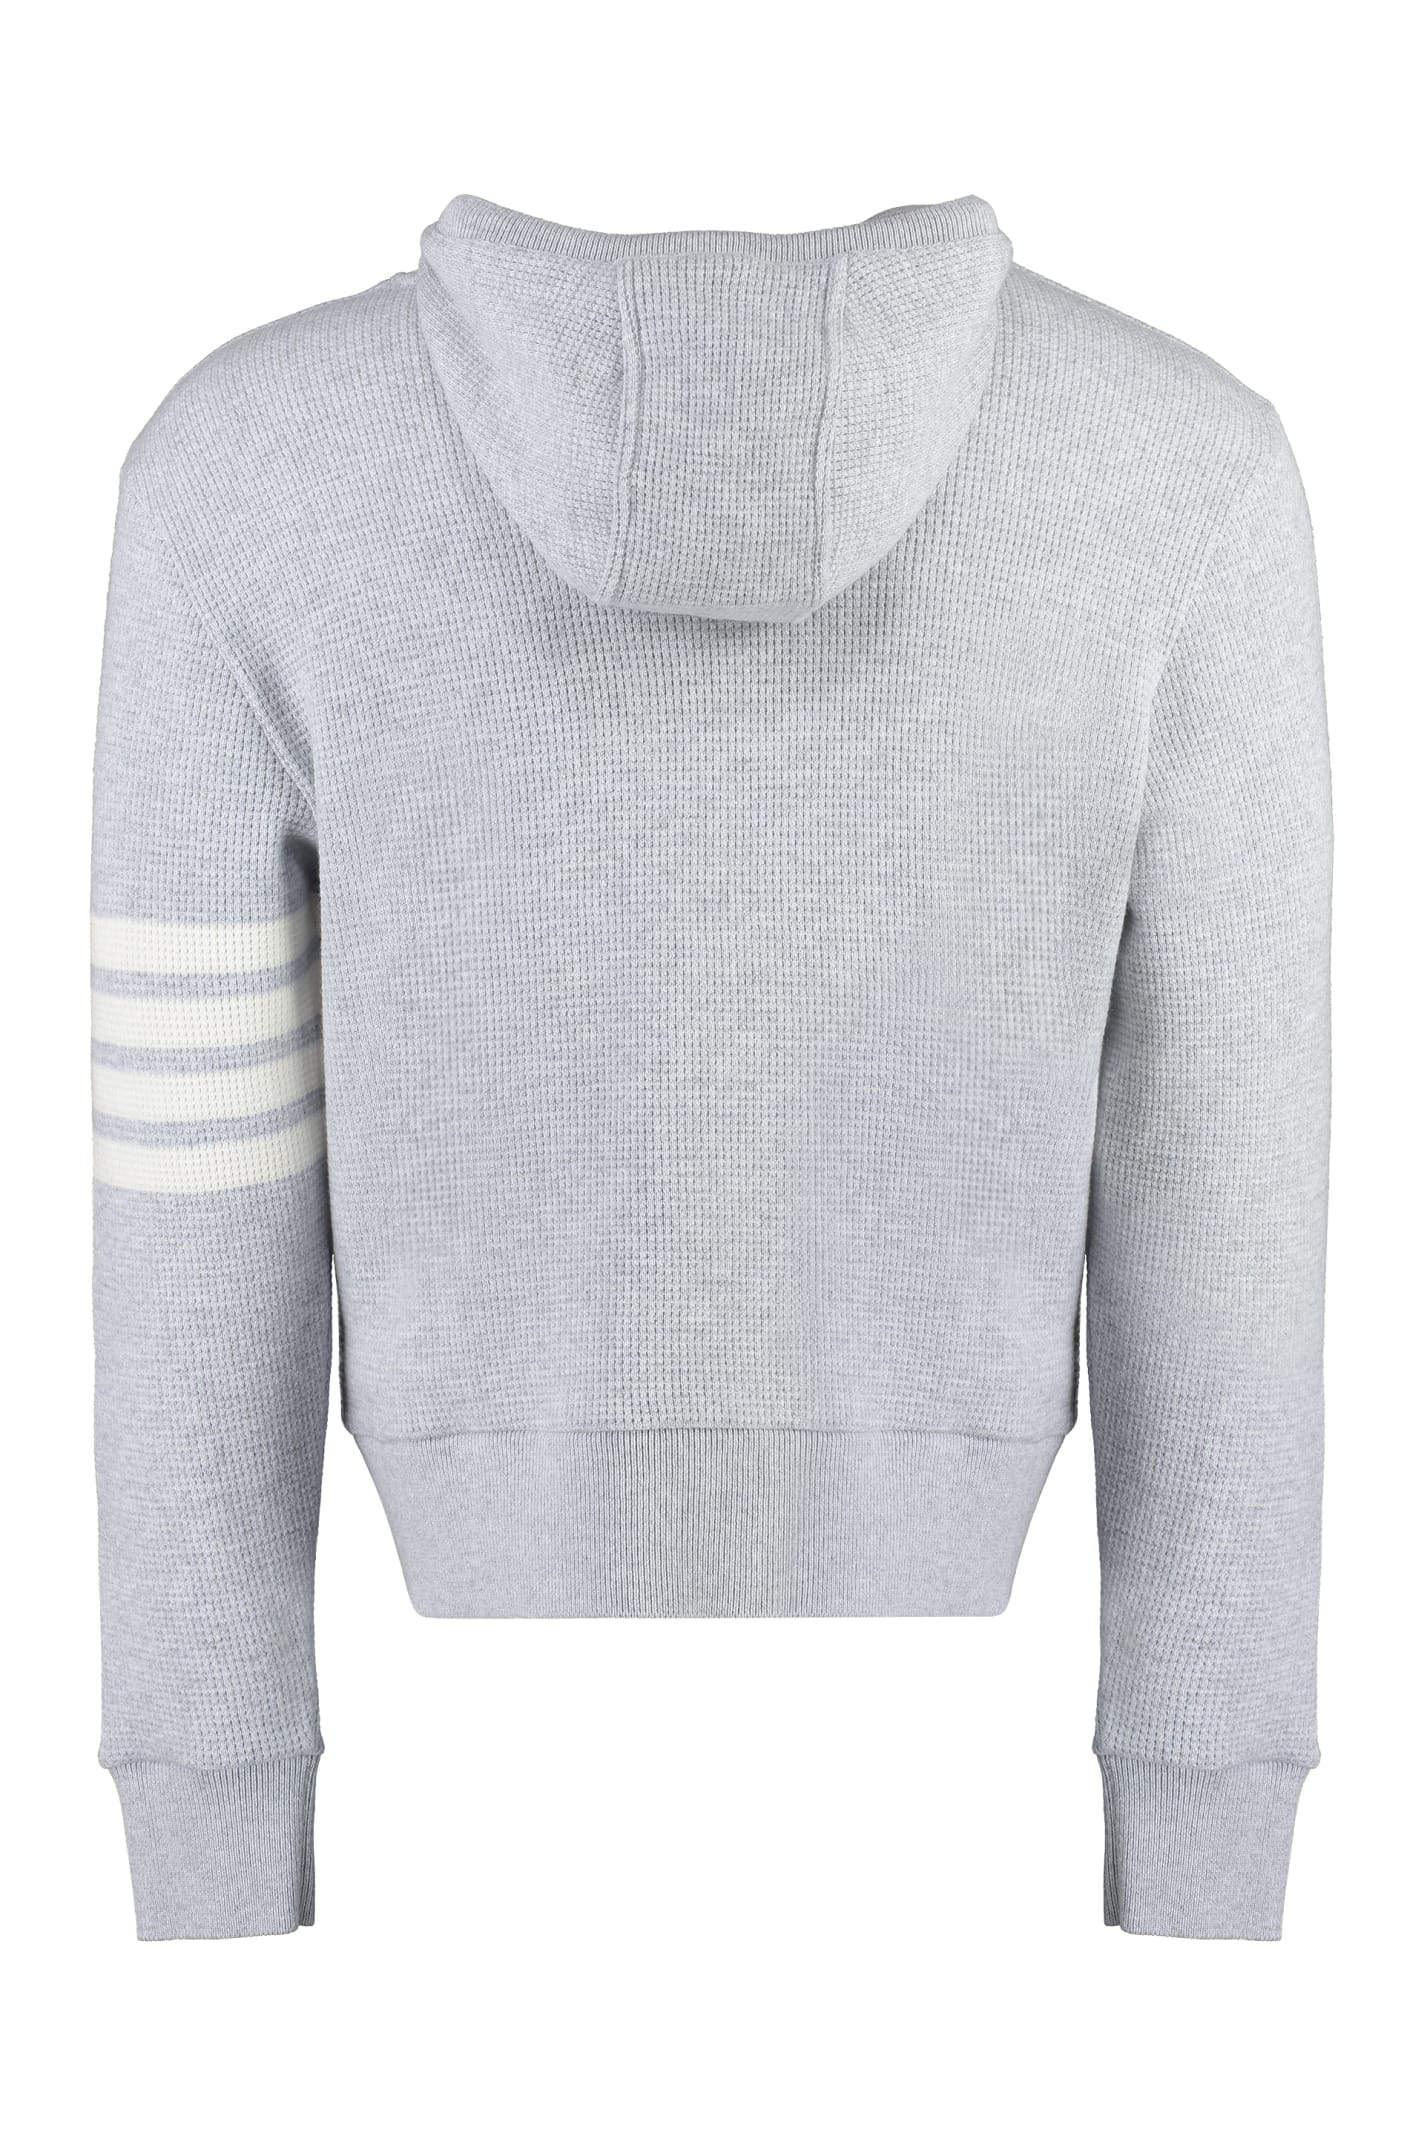 Shop Thom Browne Knitted Hoodie In Grey